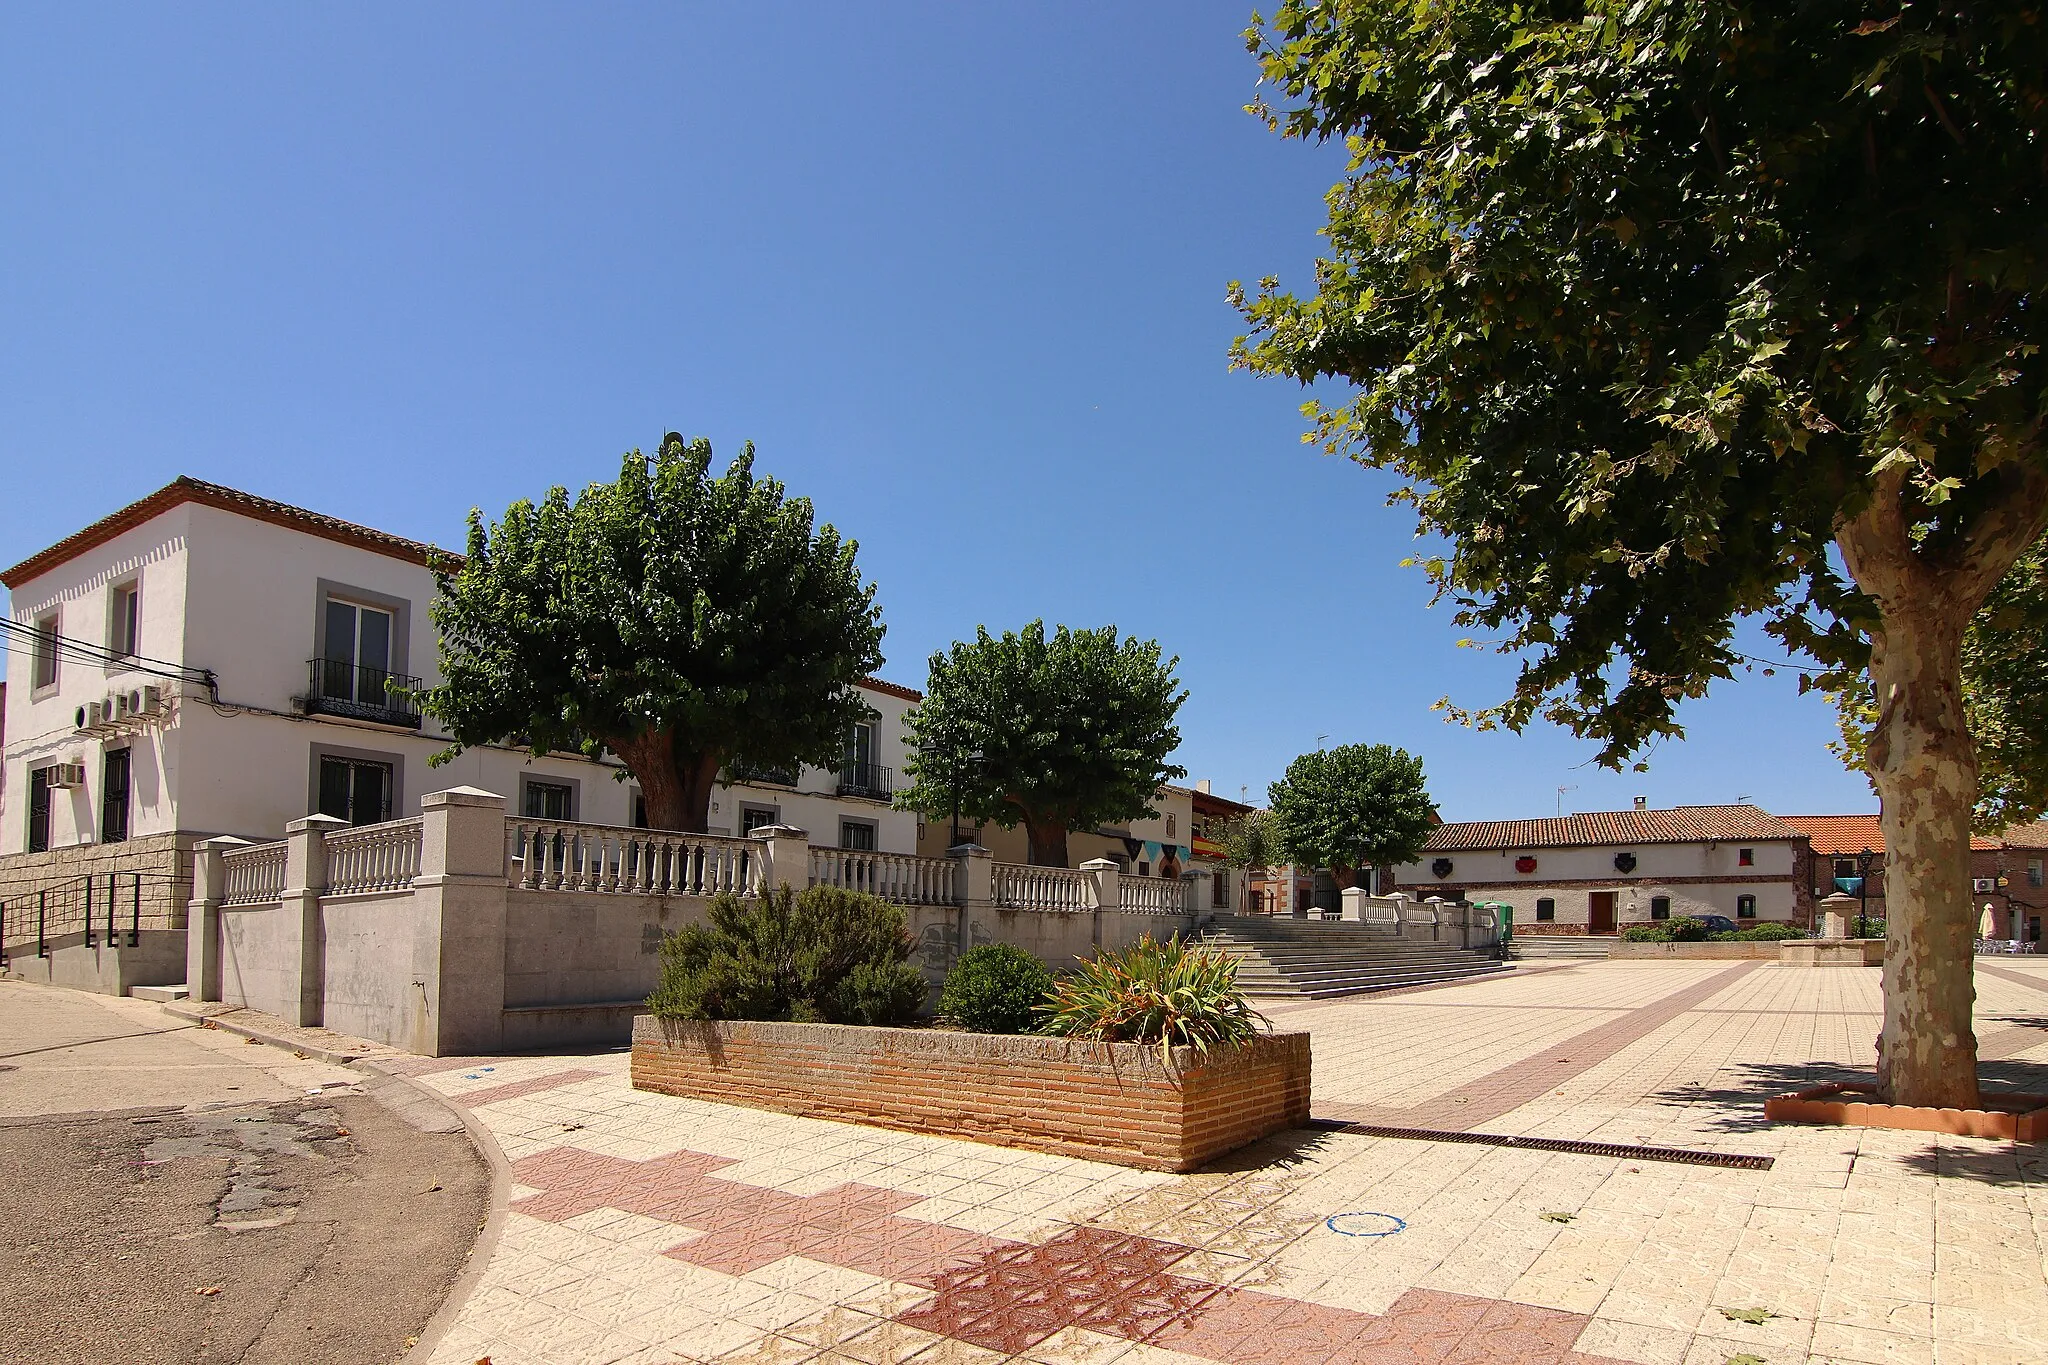 Photo showing: Plaza 18 Septiembre, Casas Consistoriales, Los Cerralbos